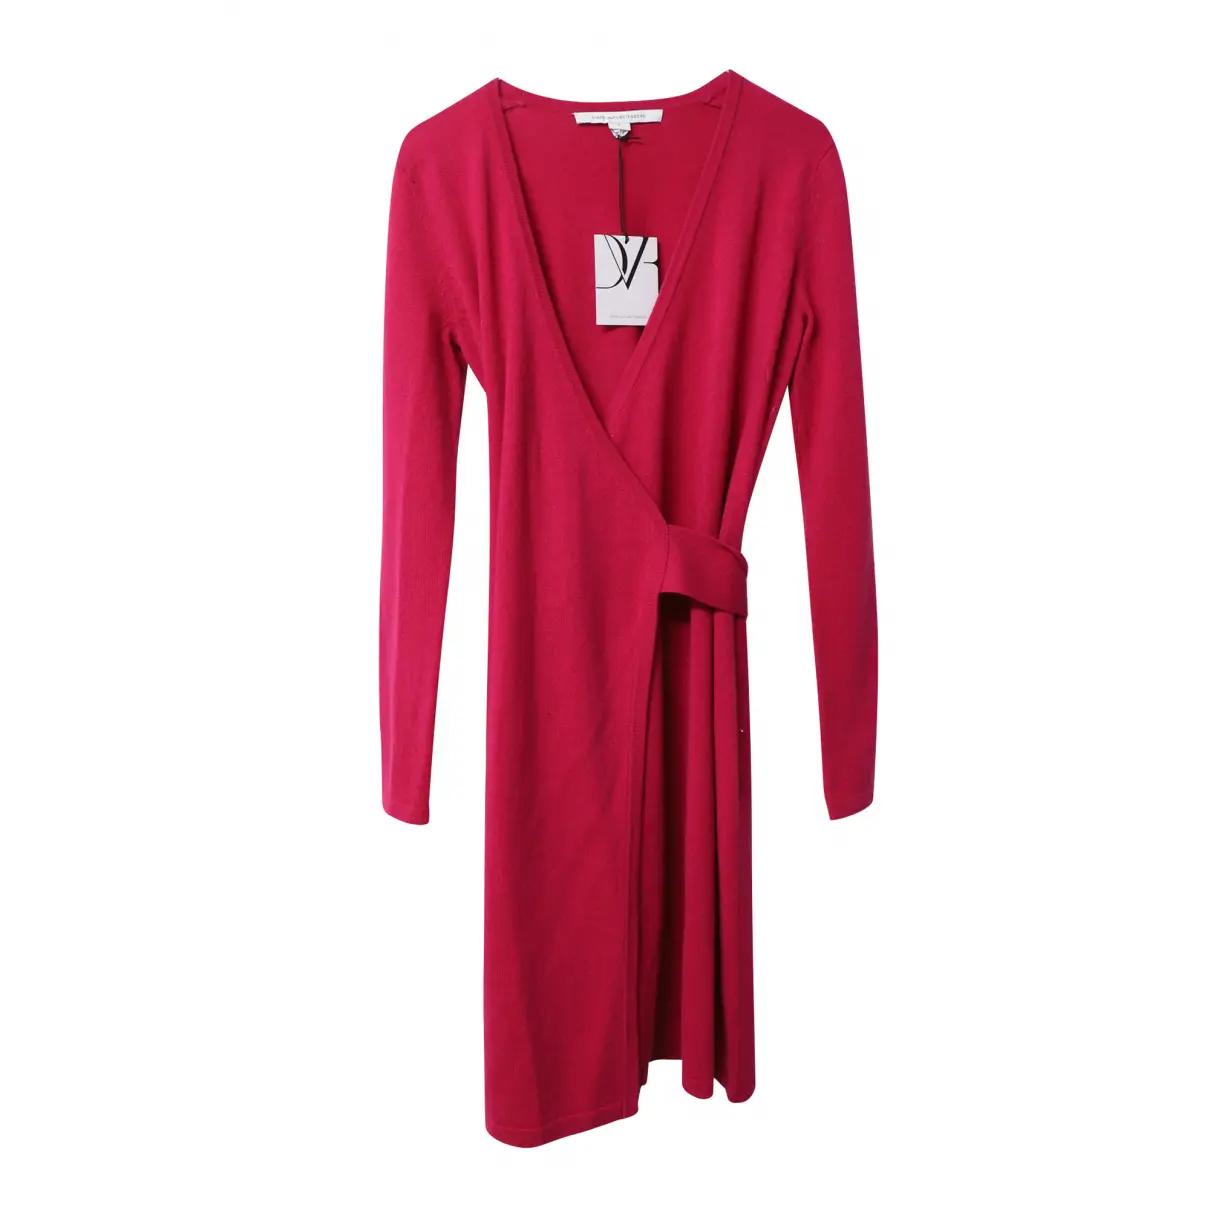 Cashmere mid-length dress Diane Von Furstenberg